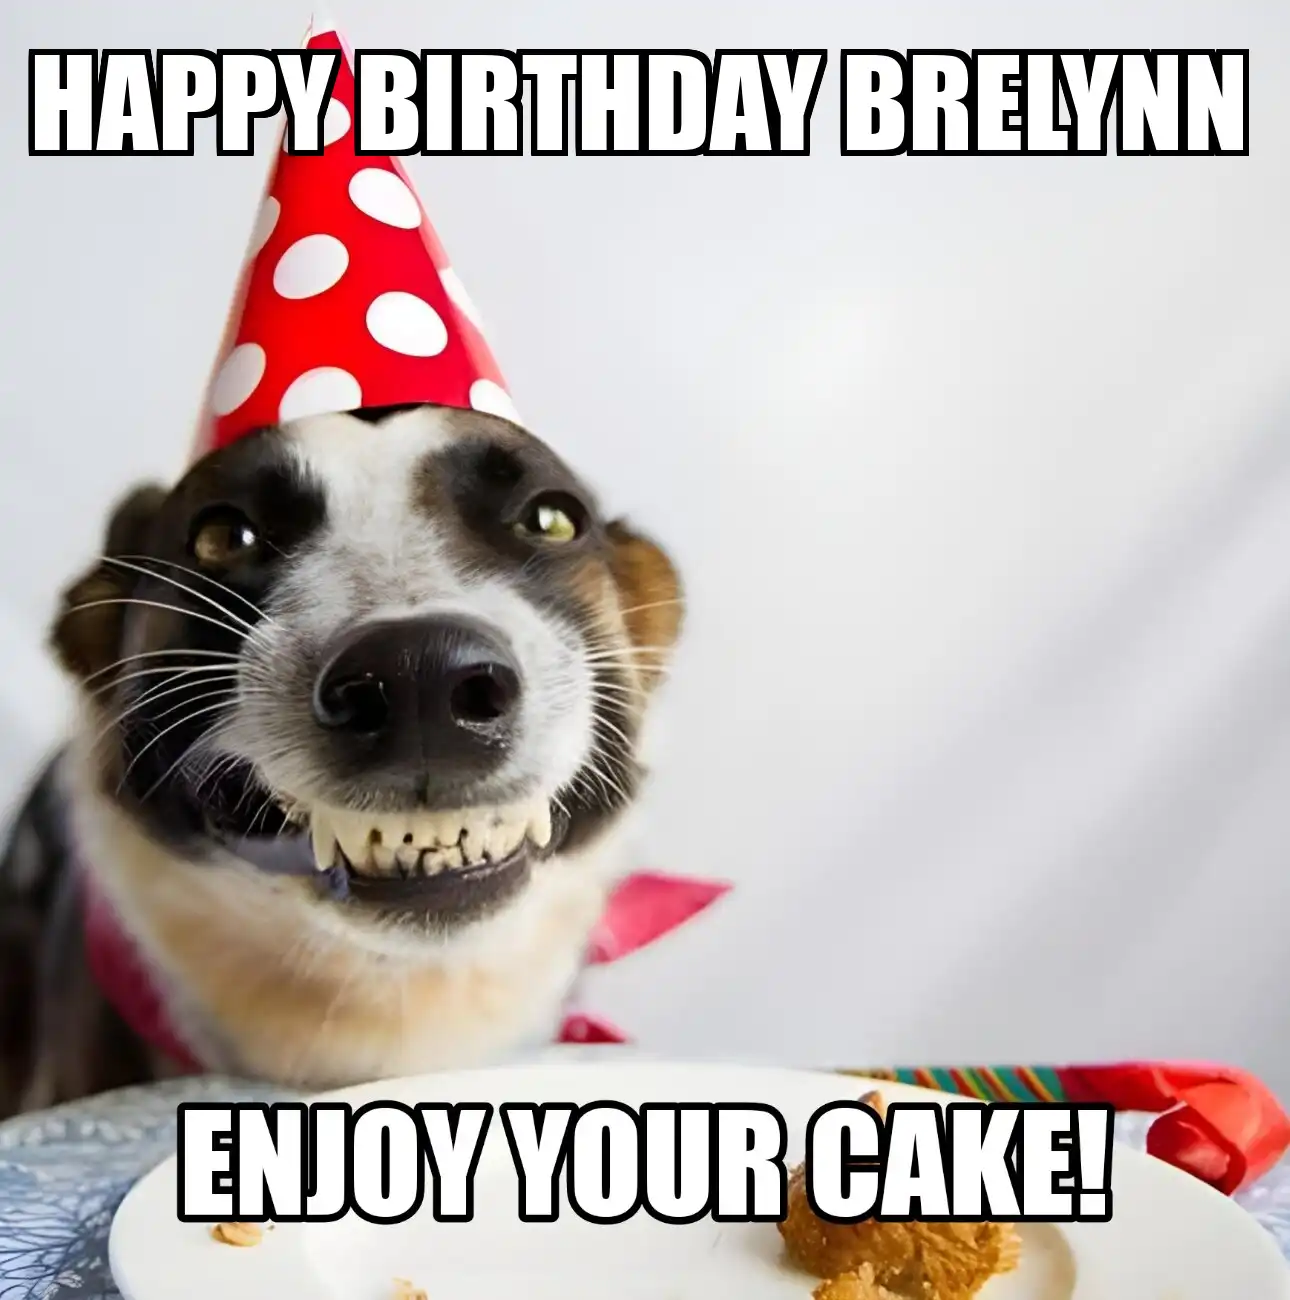 Happy Birthday Brelynn Enjoy Your Cake Dog Meme